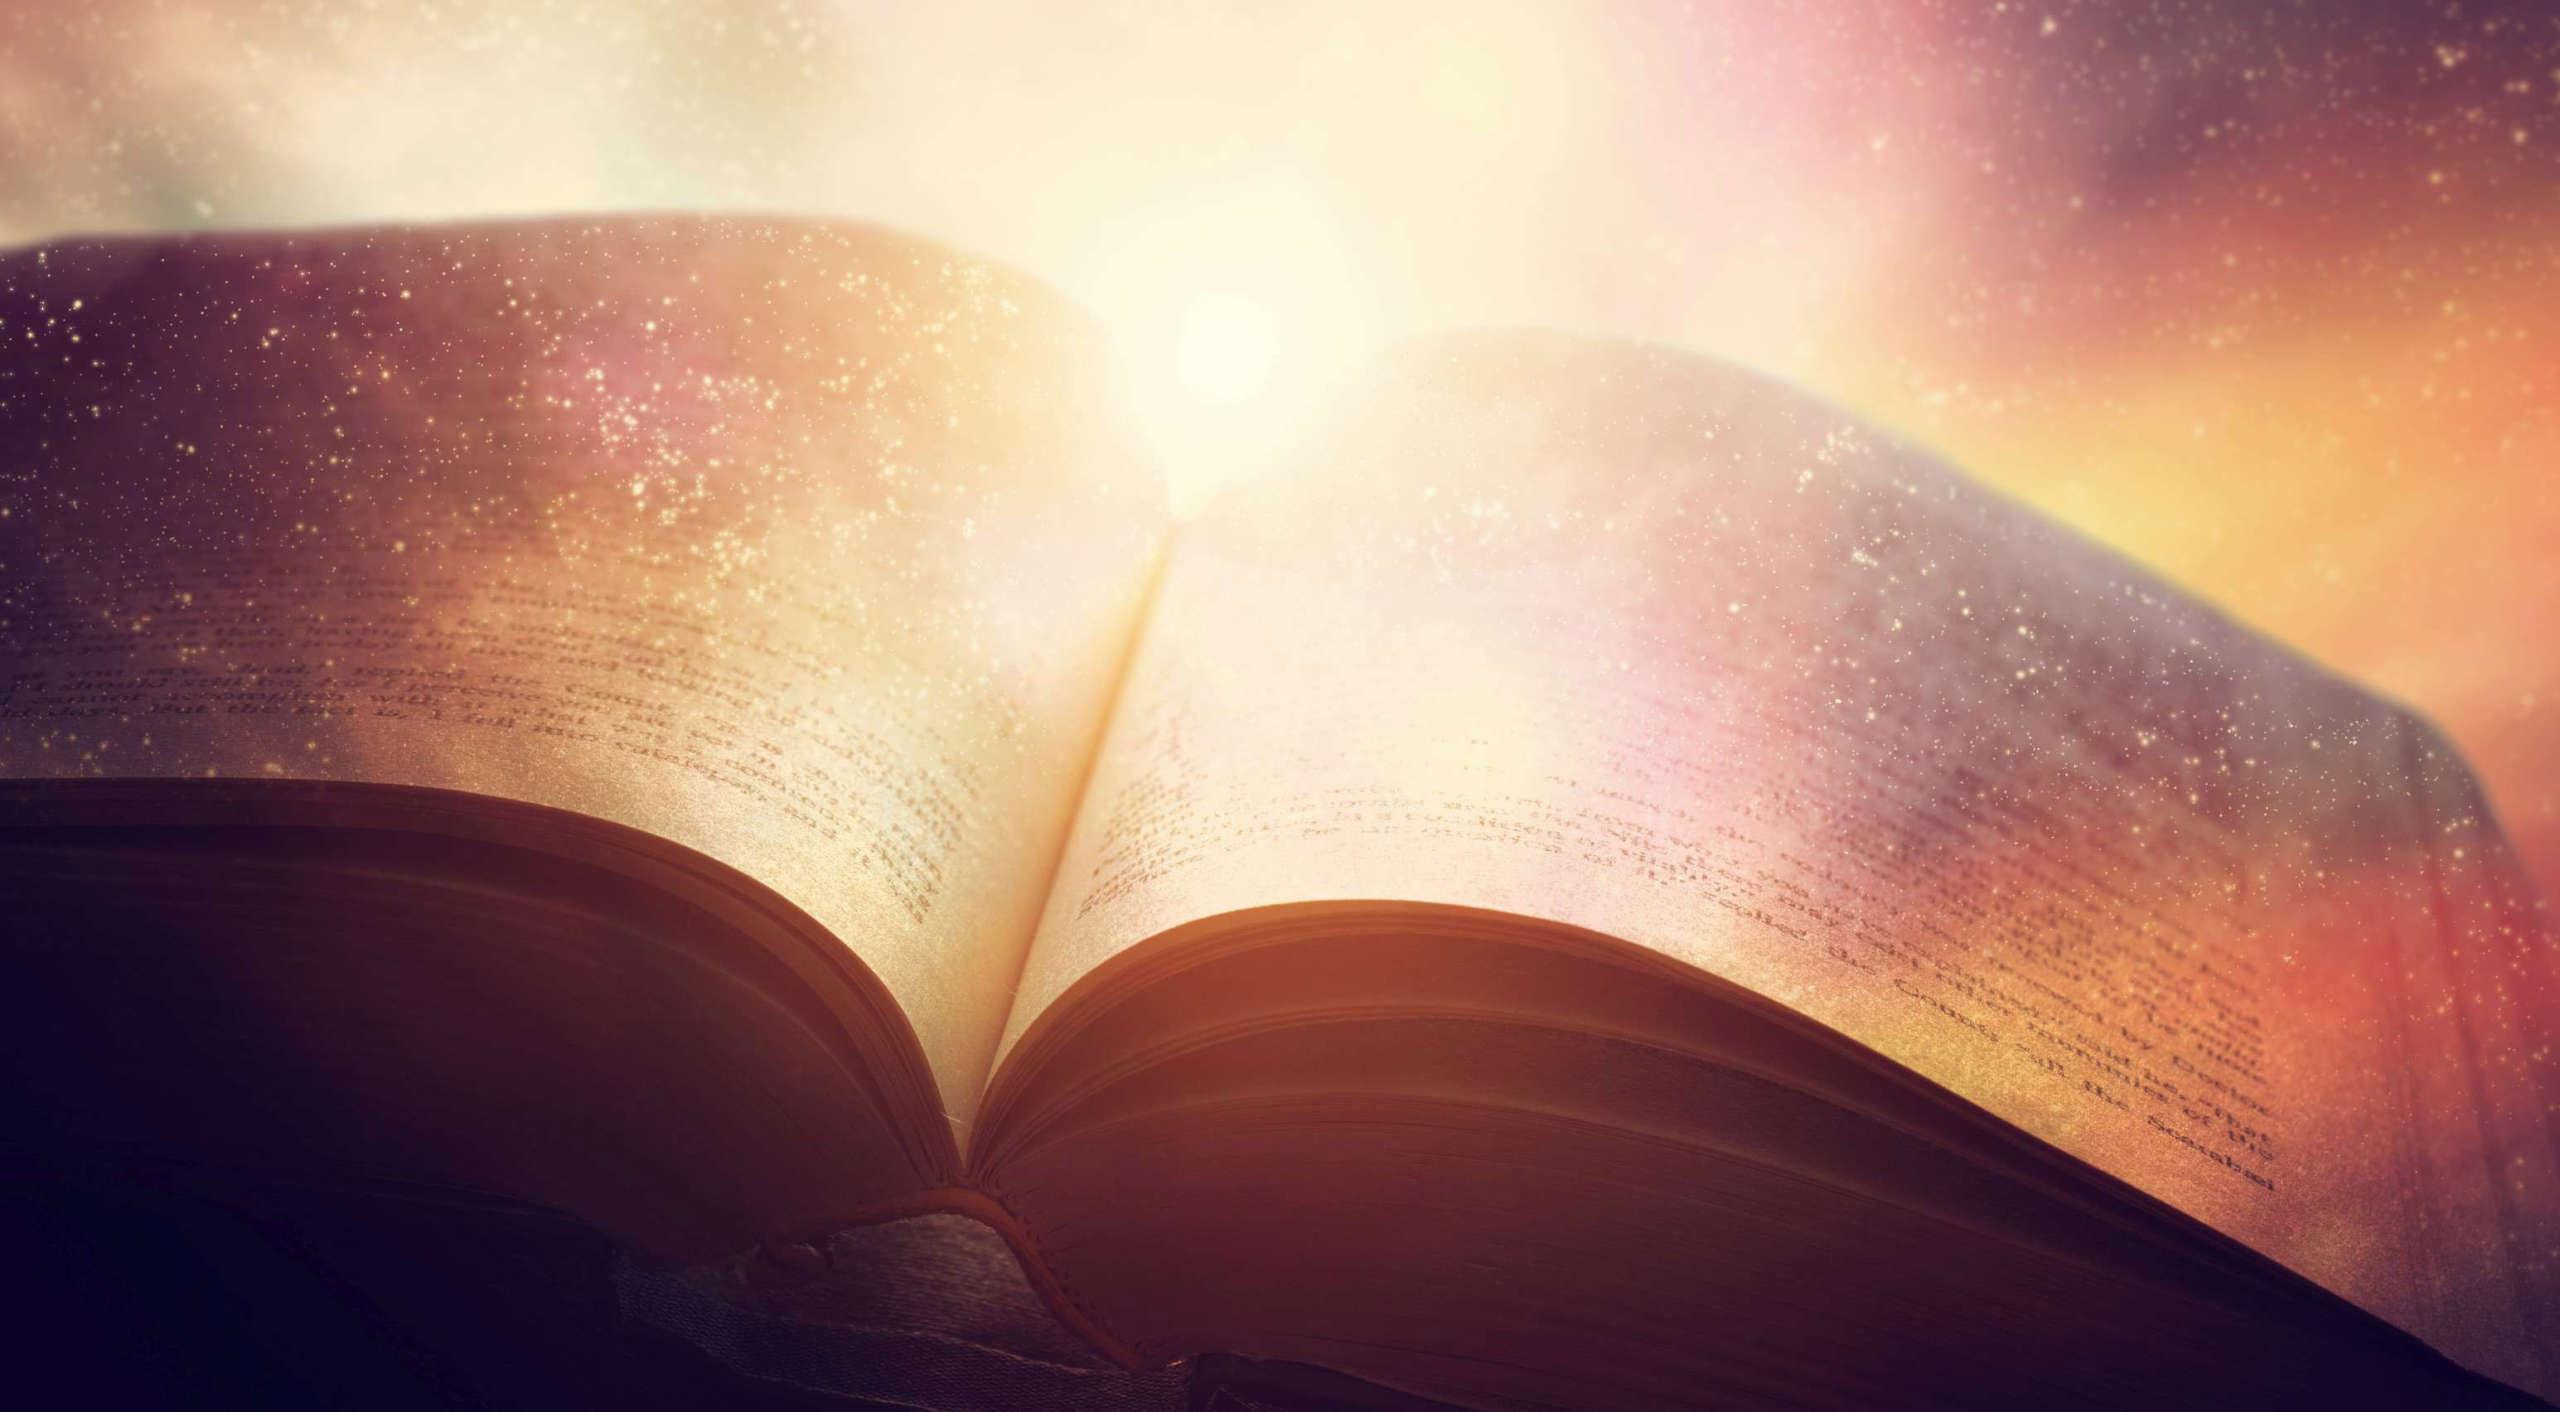 Öffnen Sie das alte Buch, das mit dem magischen Galaxienhimmel, dem Universum, den Sternen verschmolzen ist. Begriff von Literatur, Fantasie, Horoskop, Religion usw.